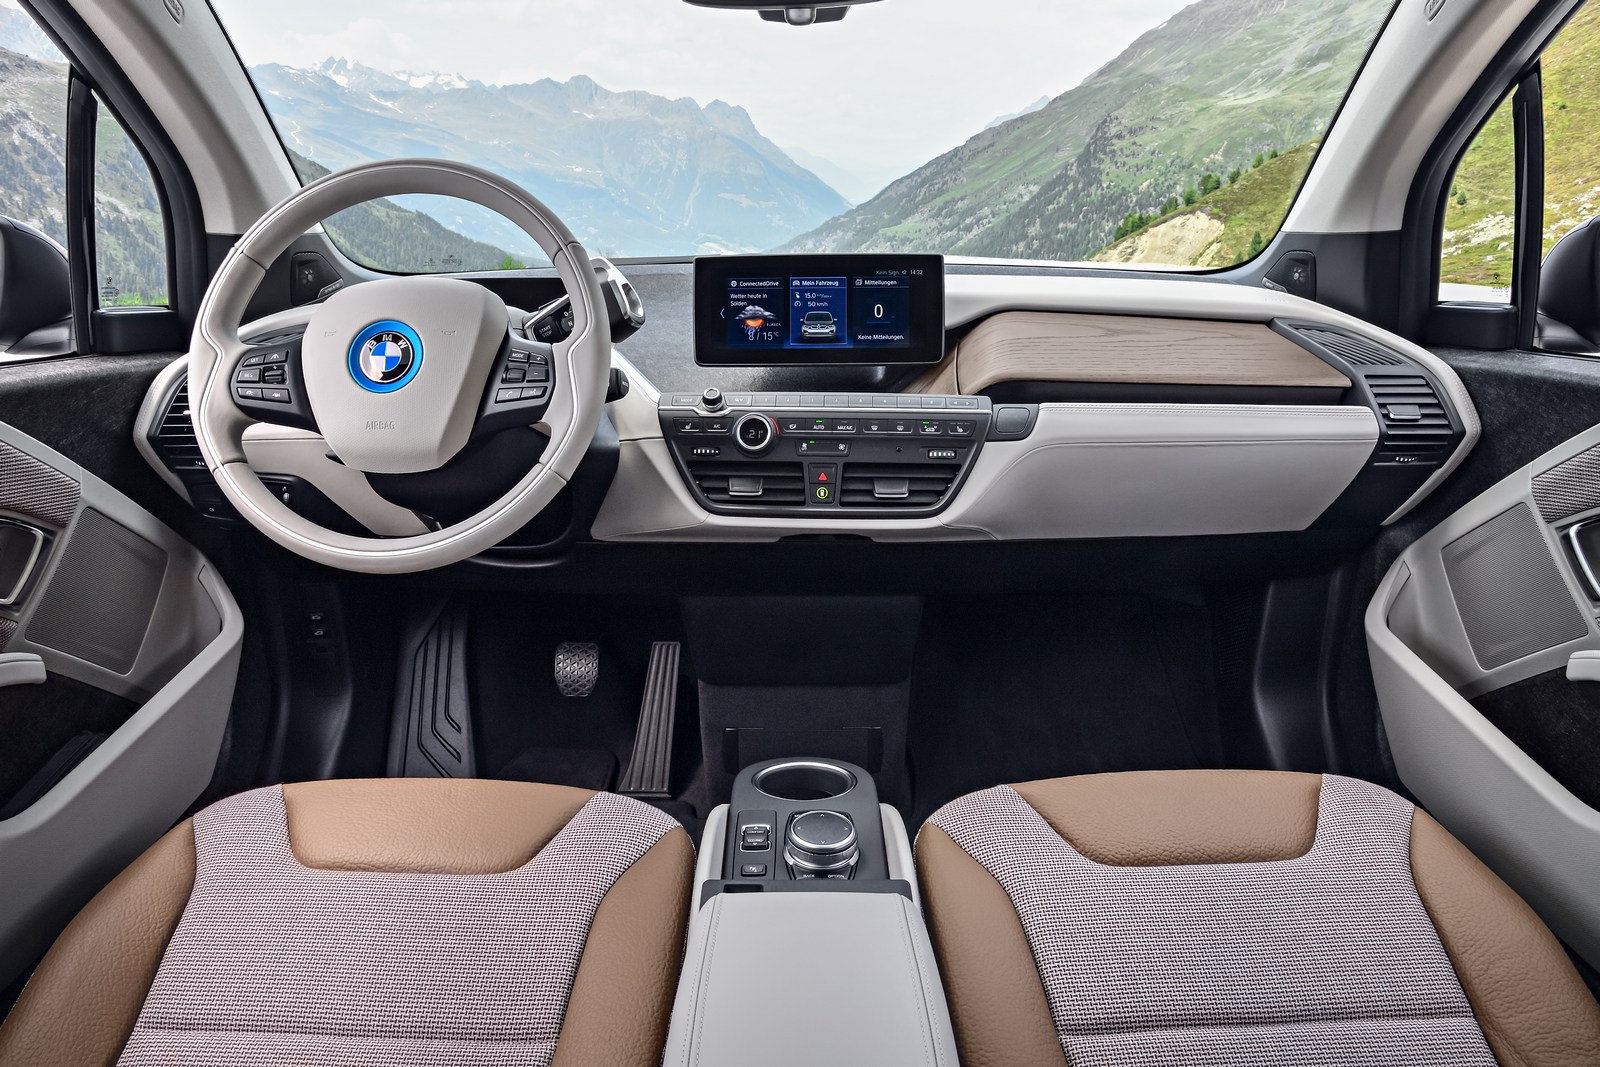 Phiên bản BMW i3 thương mại ra mắt tháng 7/2013, sau đó chính thức được sản xuất hàng loạt từ tháng 9/2013.